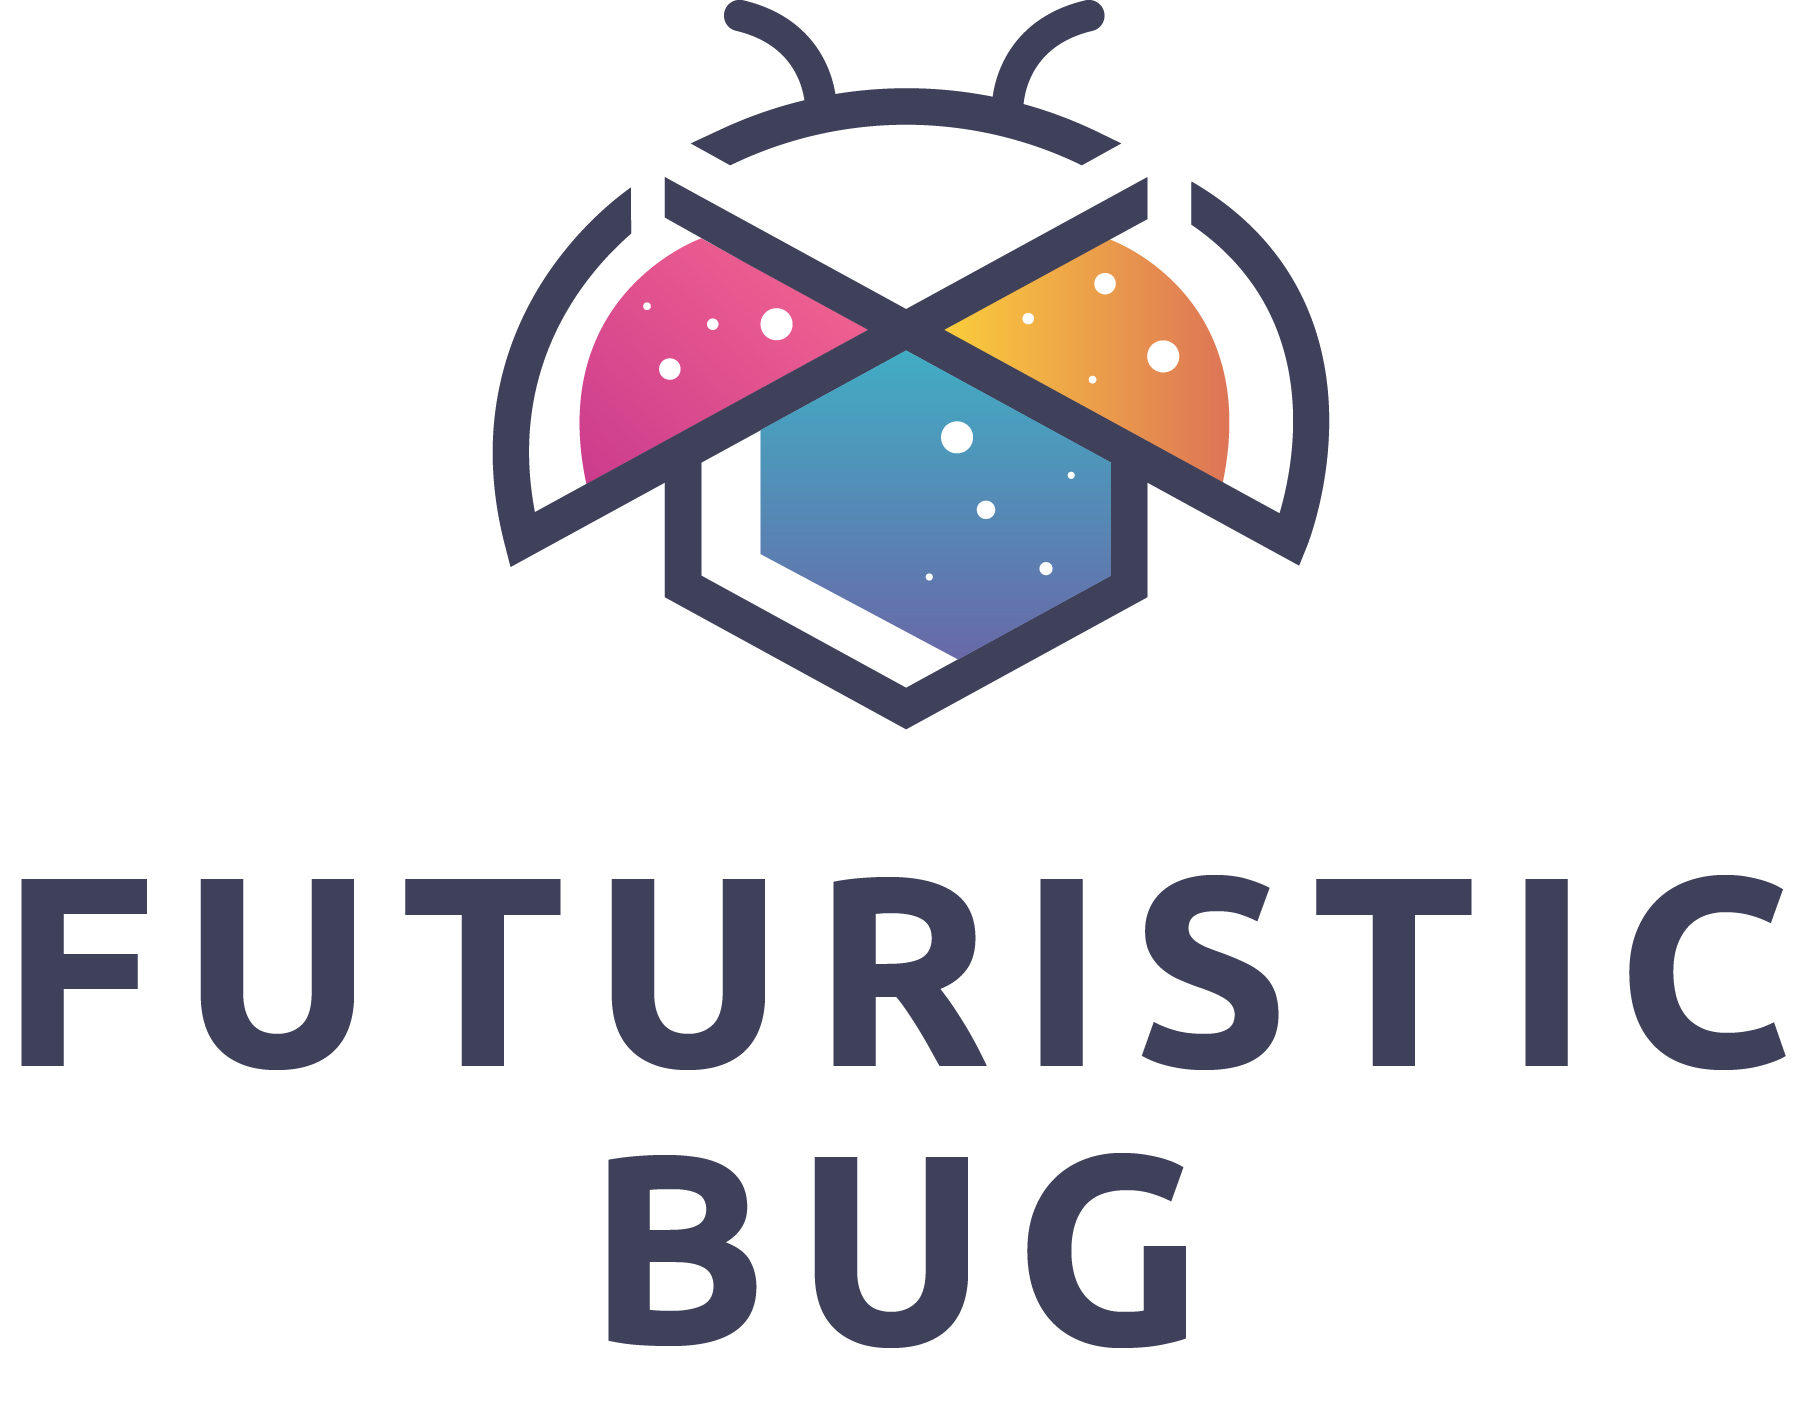 Futuristic Bug